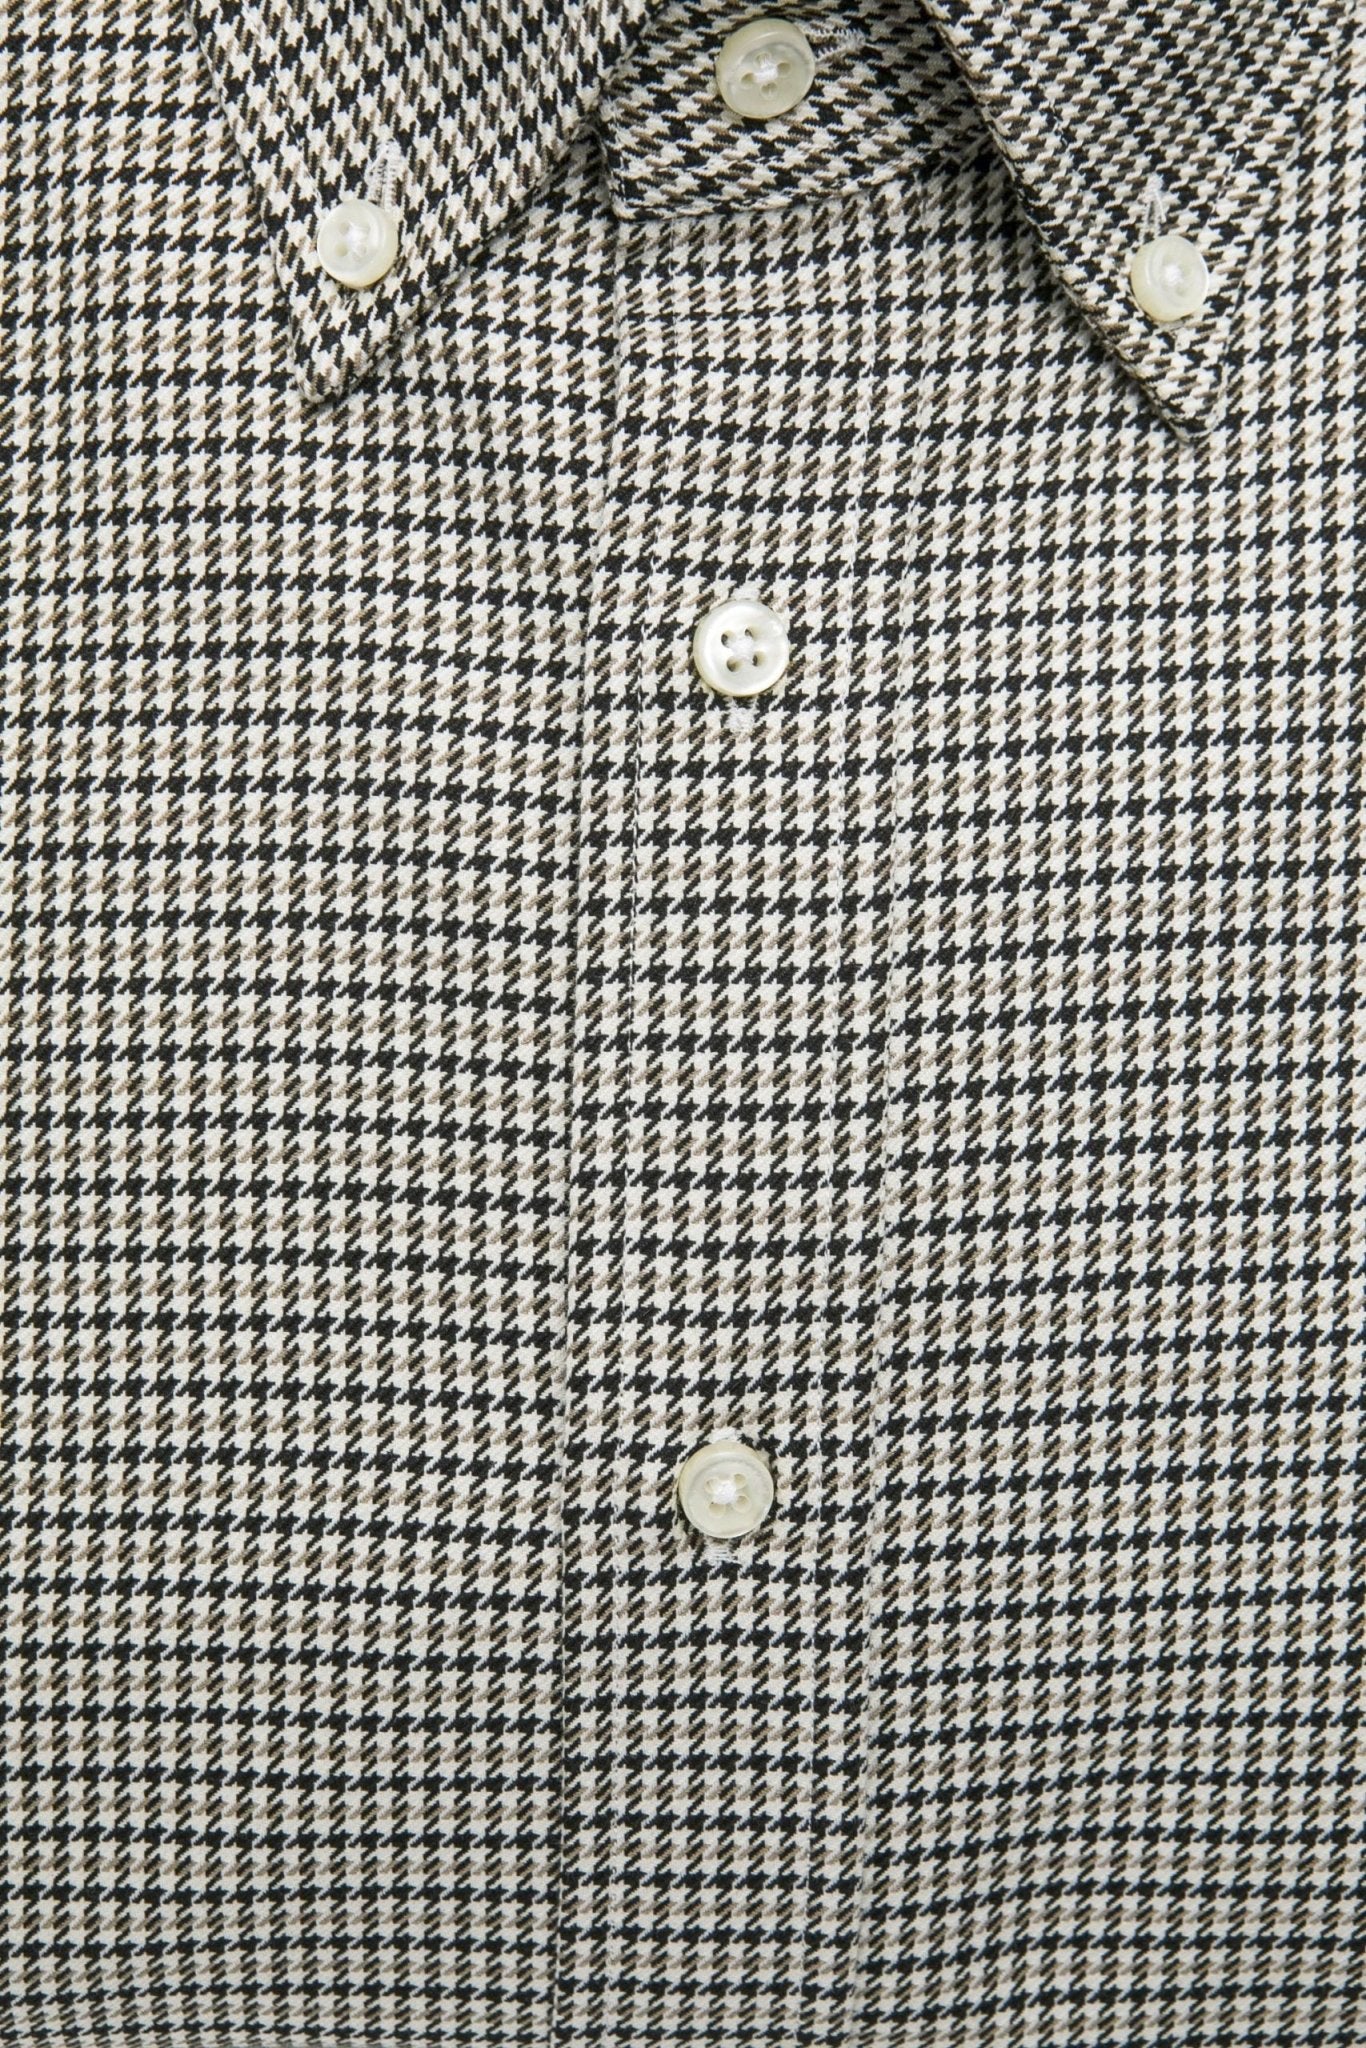 Robert Friedman Beige Cotton Shirt - Fizigo